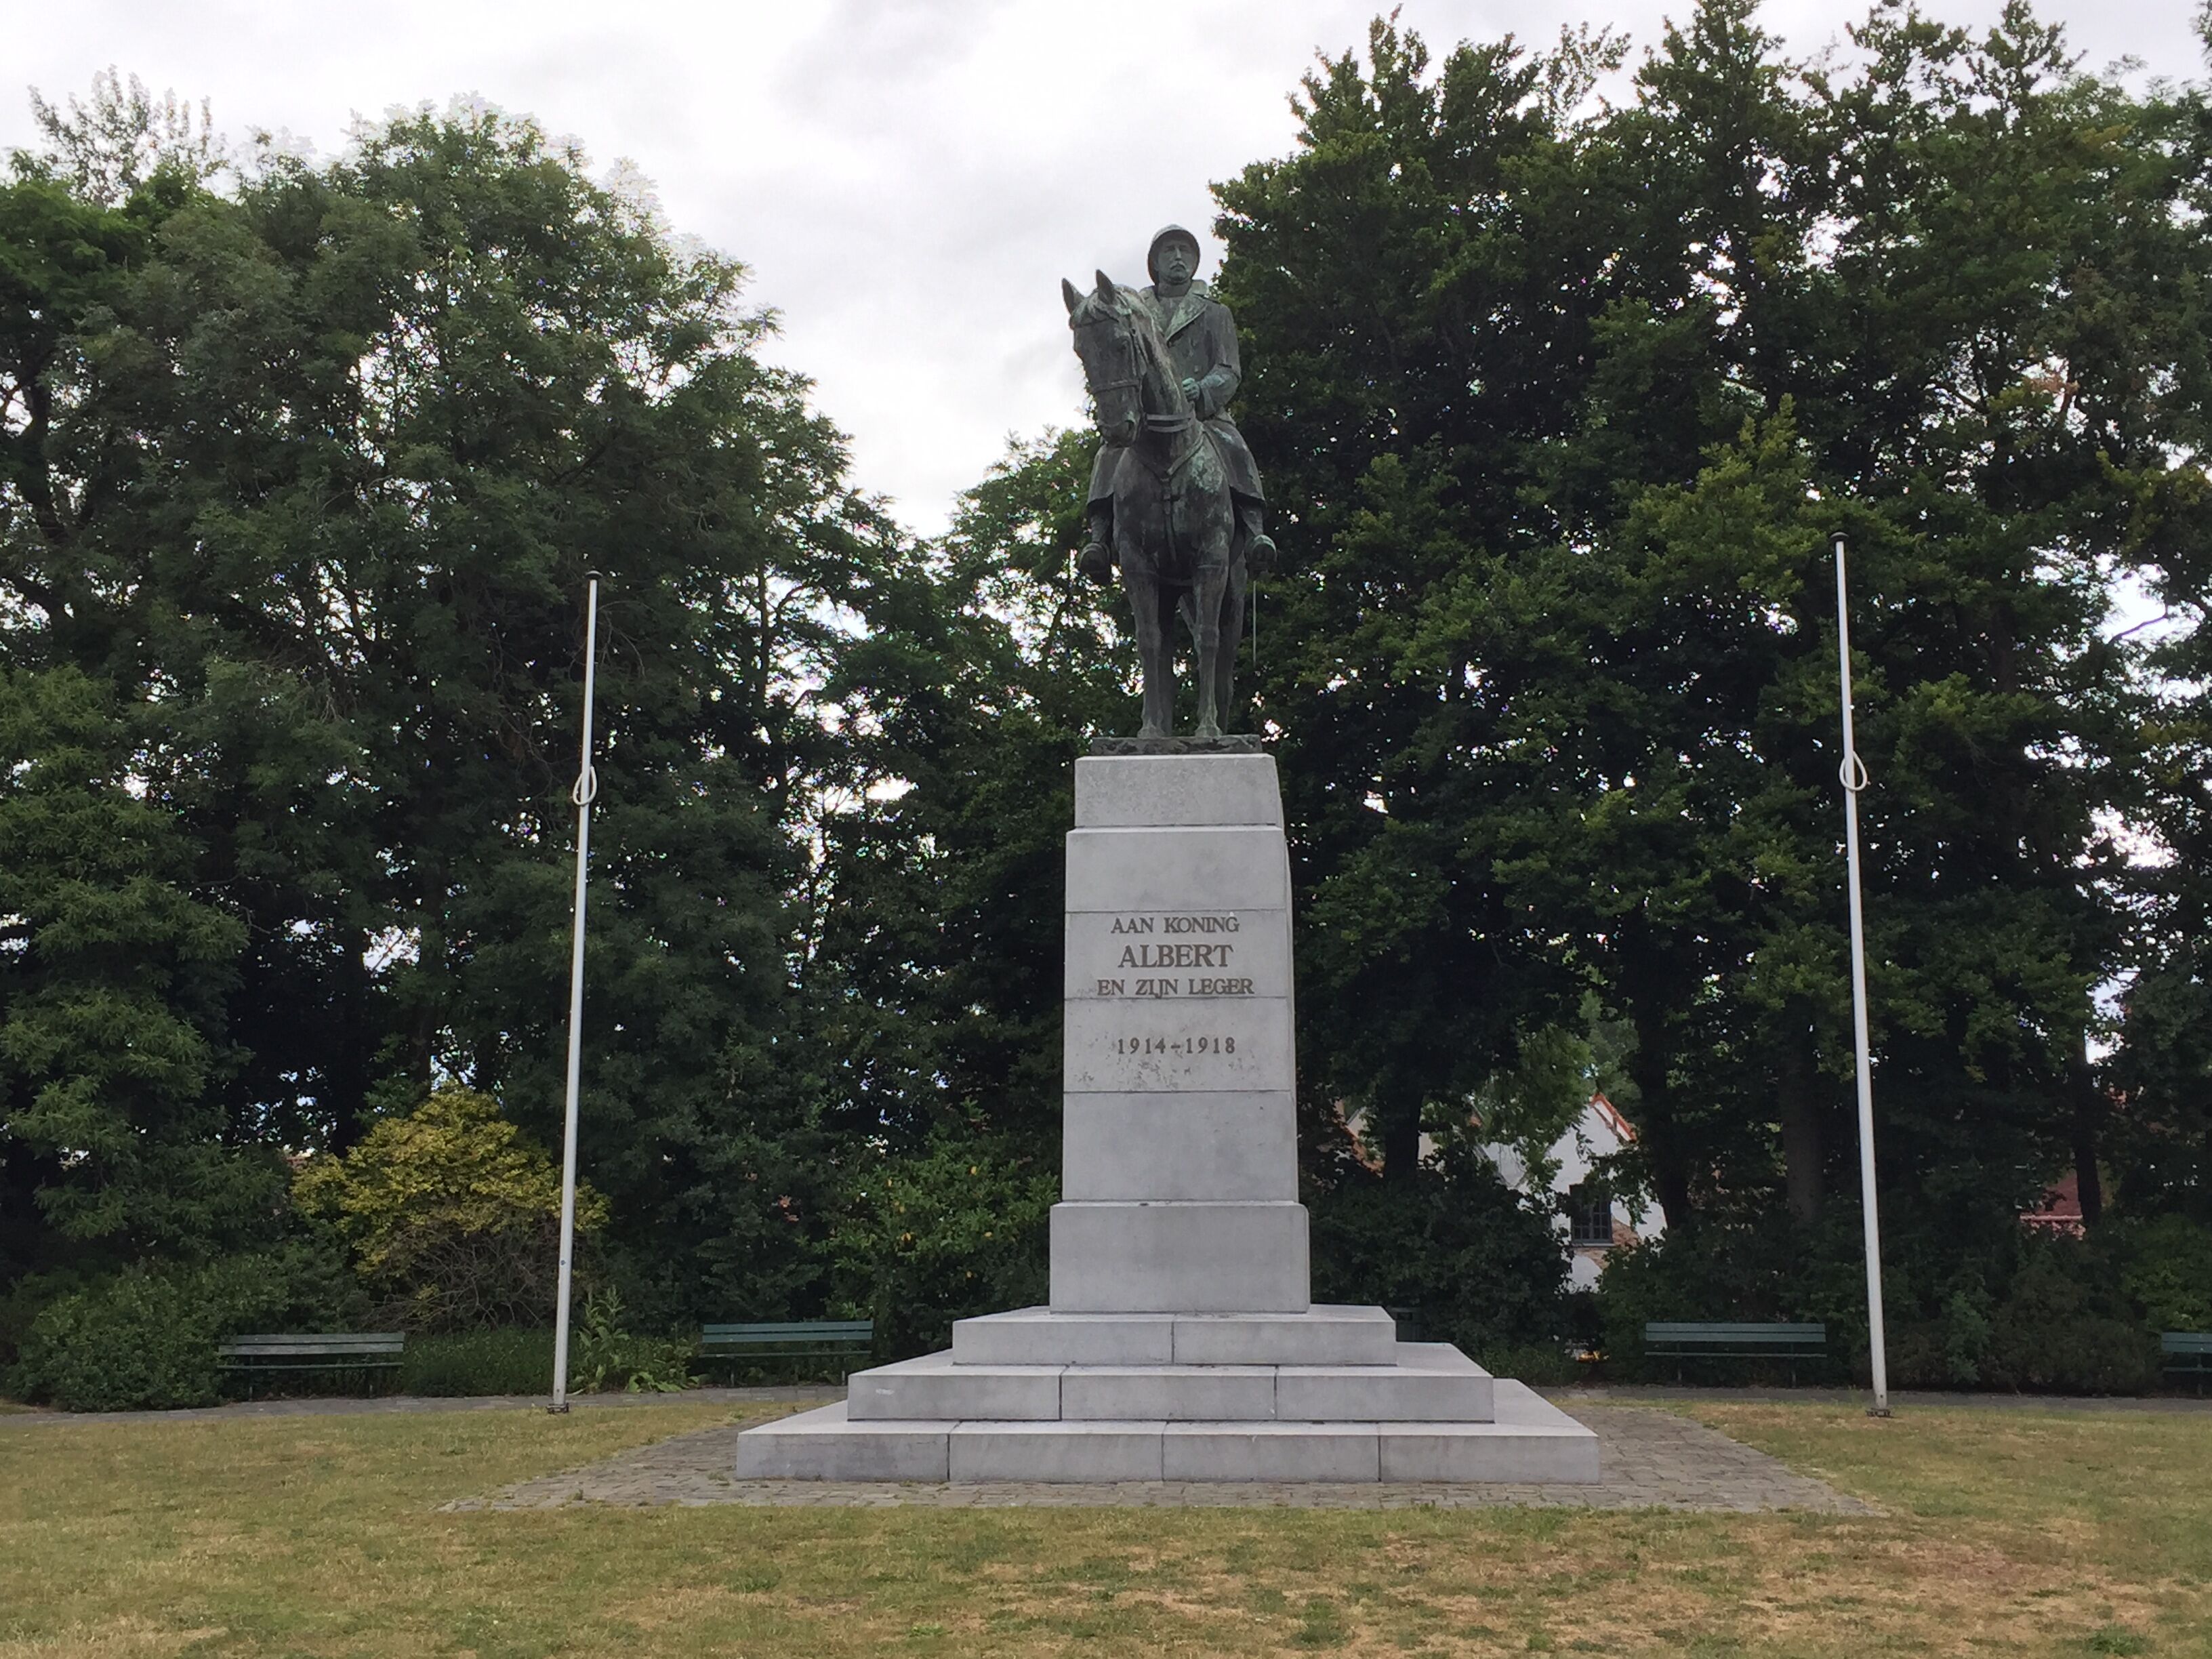 Monumento equestre dedicato ad Alberto I, re del Belgio e condottiero dell'esercito durante la Prima guerra mondiale